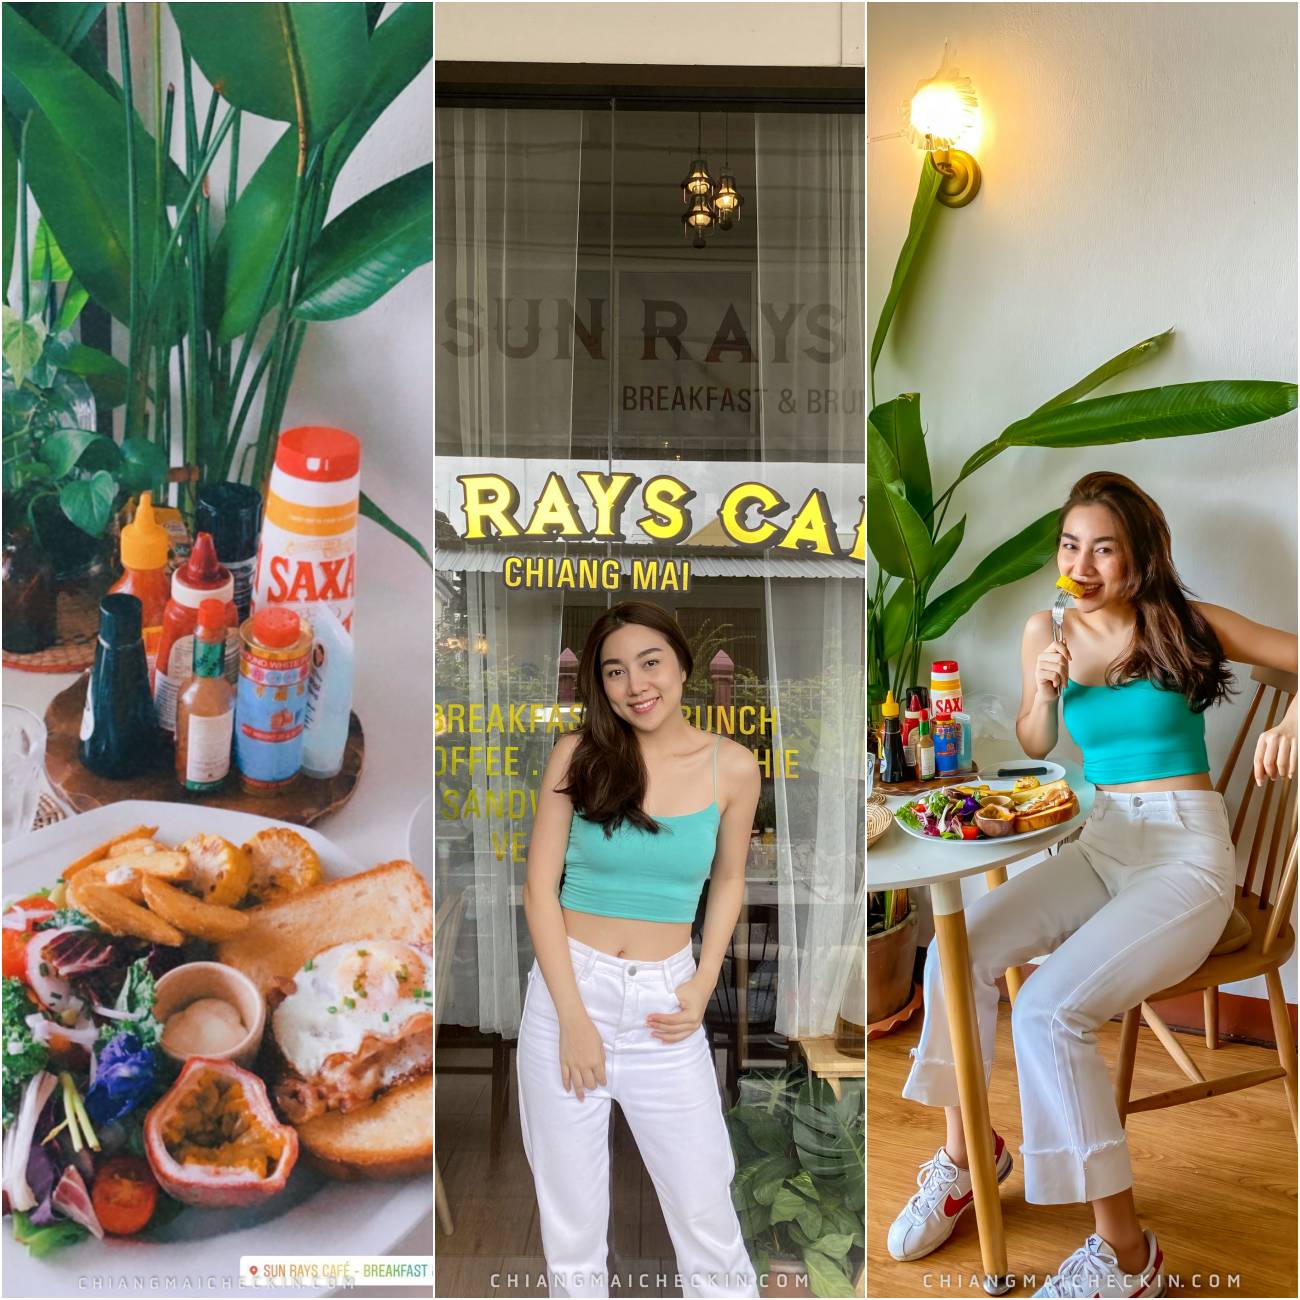 Sun Rays Cafe คาเฟ่เชียงใหม่ ย่านวัดพระสิงห์ รสชาติอร่อยเวออร์ และยังตกแต่งร้านสวยงามอีกด้วย 